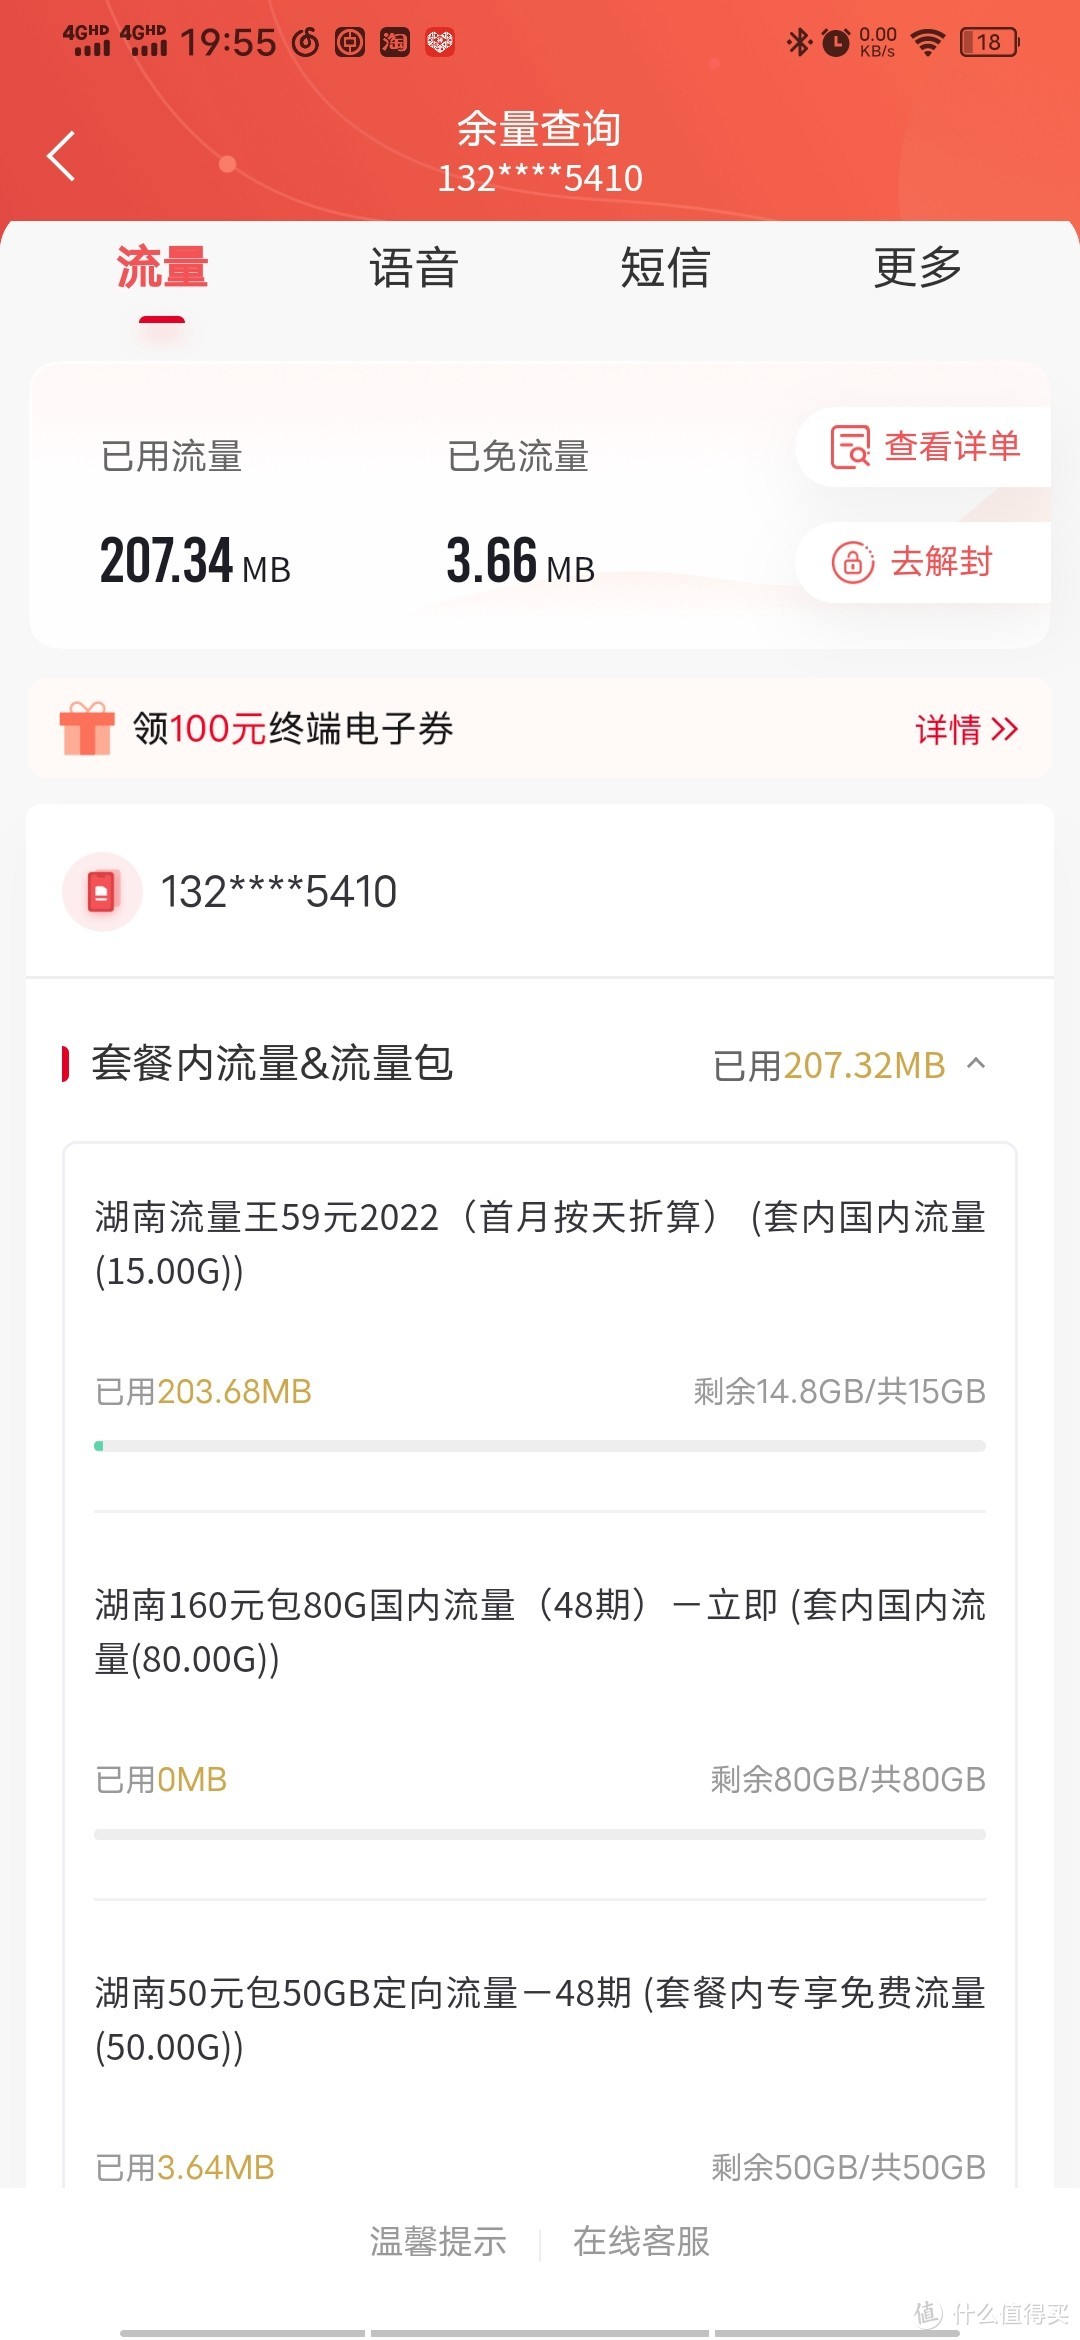 中国联通 惠兔卡 19元/月（145G全国流量+200分钟通话）两年套餐